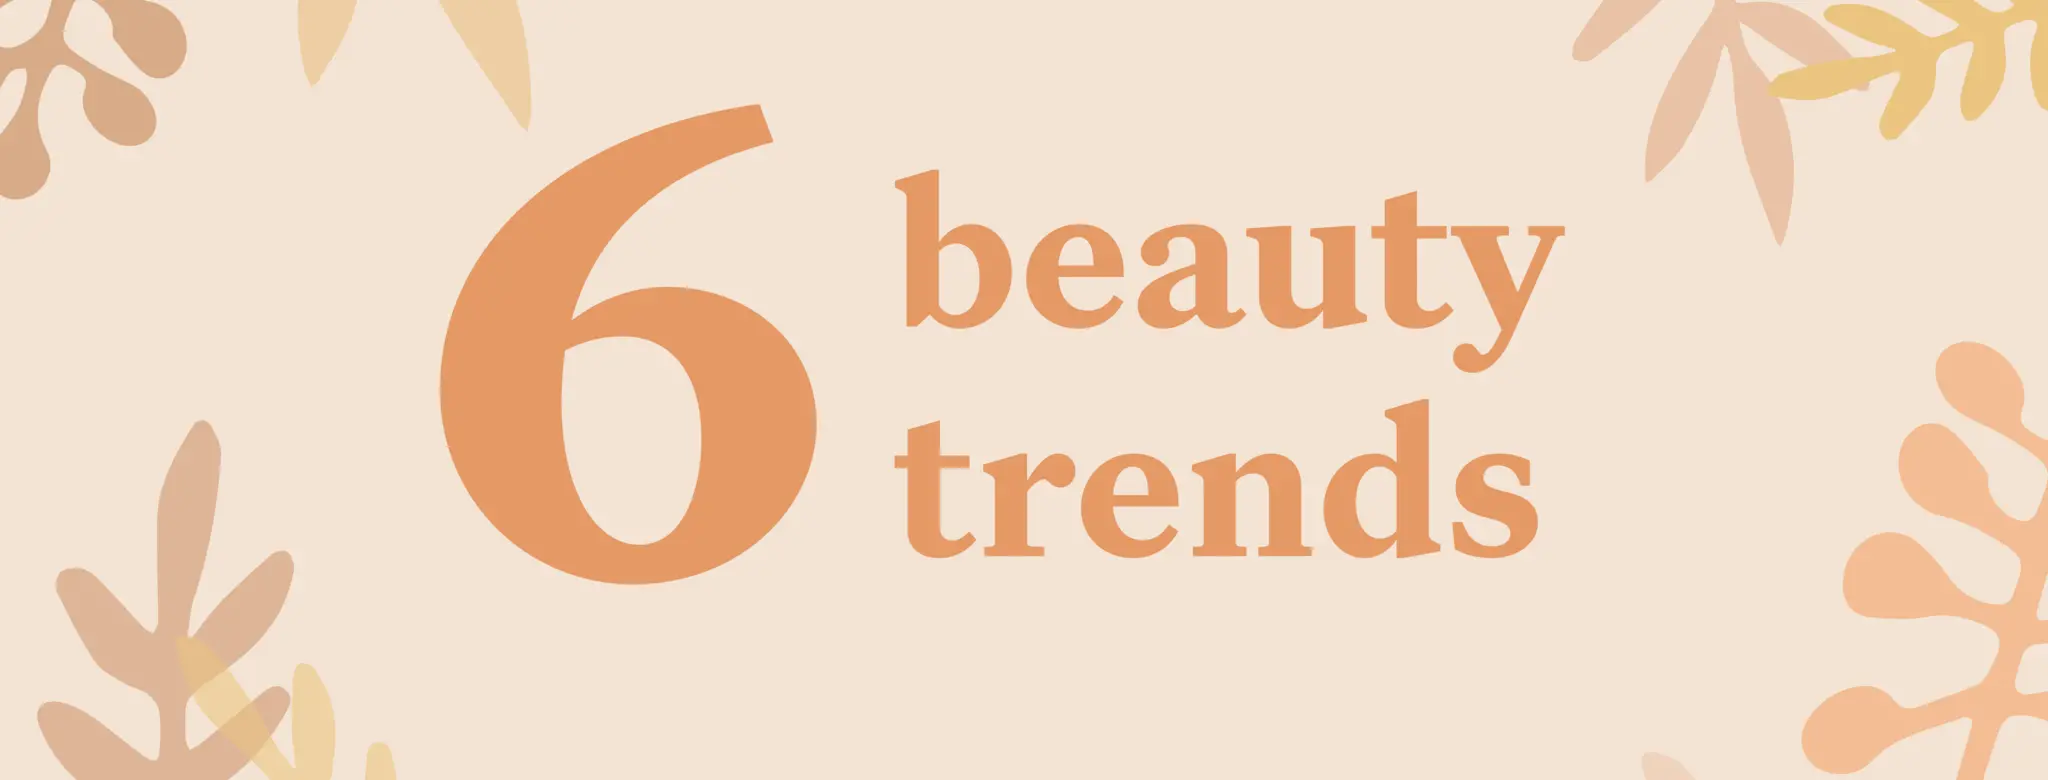 Six beauty trends